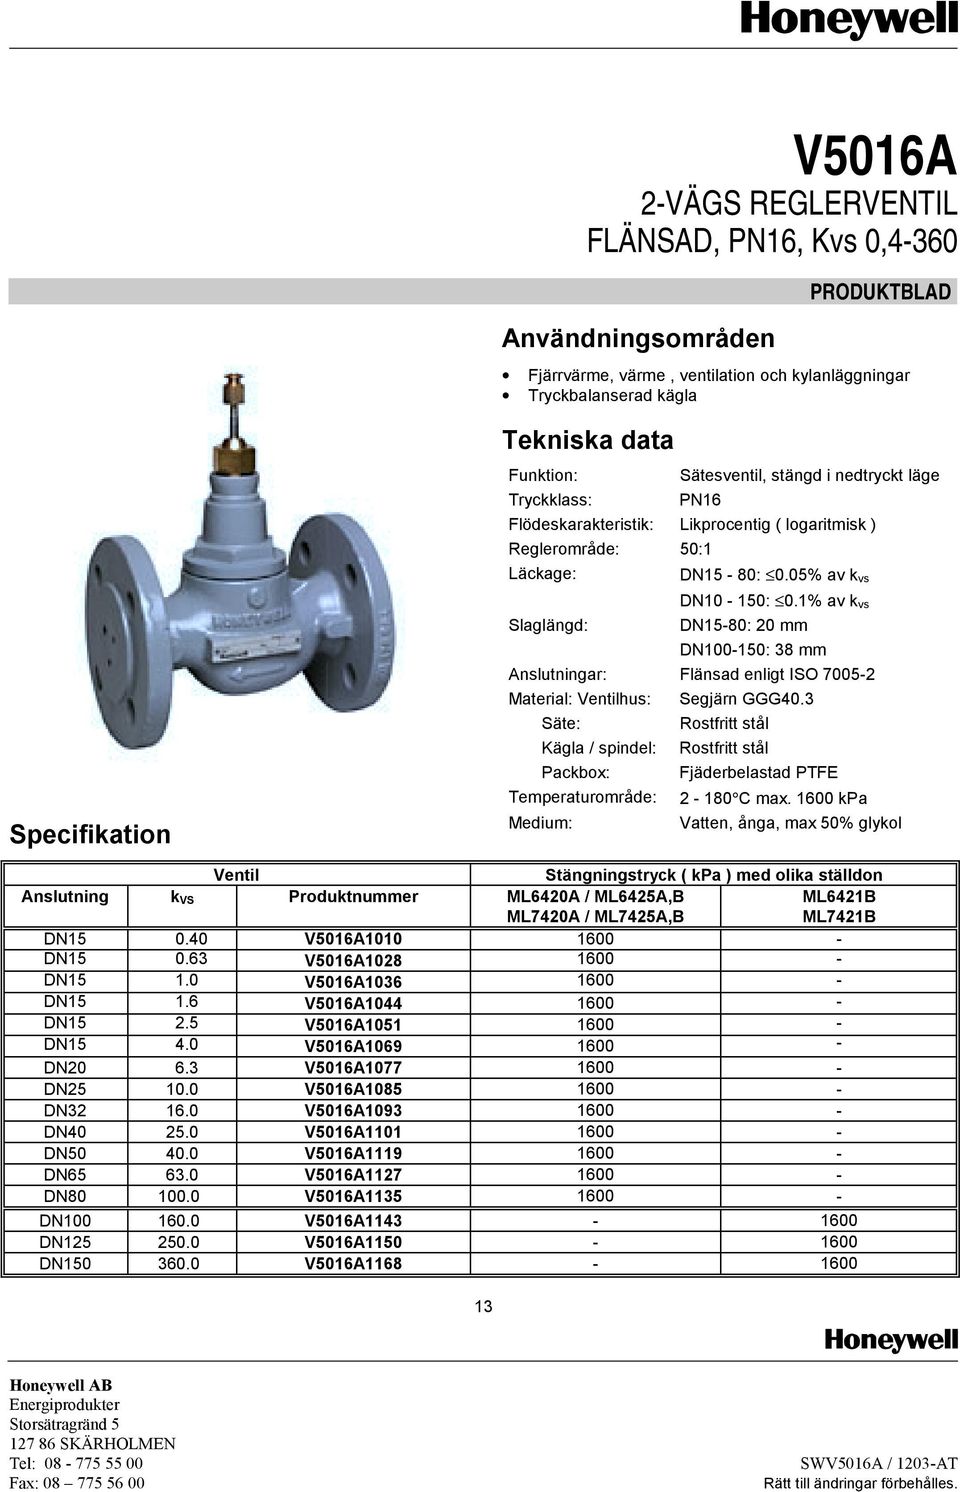 1% av k vs DN15-80: 20 mm DN100-150: 38 mm Anslutningar: Flänsad enligt ISO 7005-2 Material: Ventilhus: Segjärn GGG40.